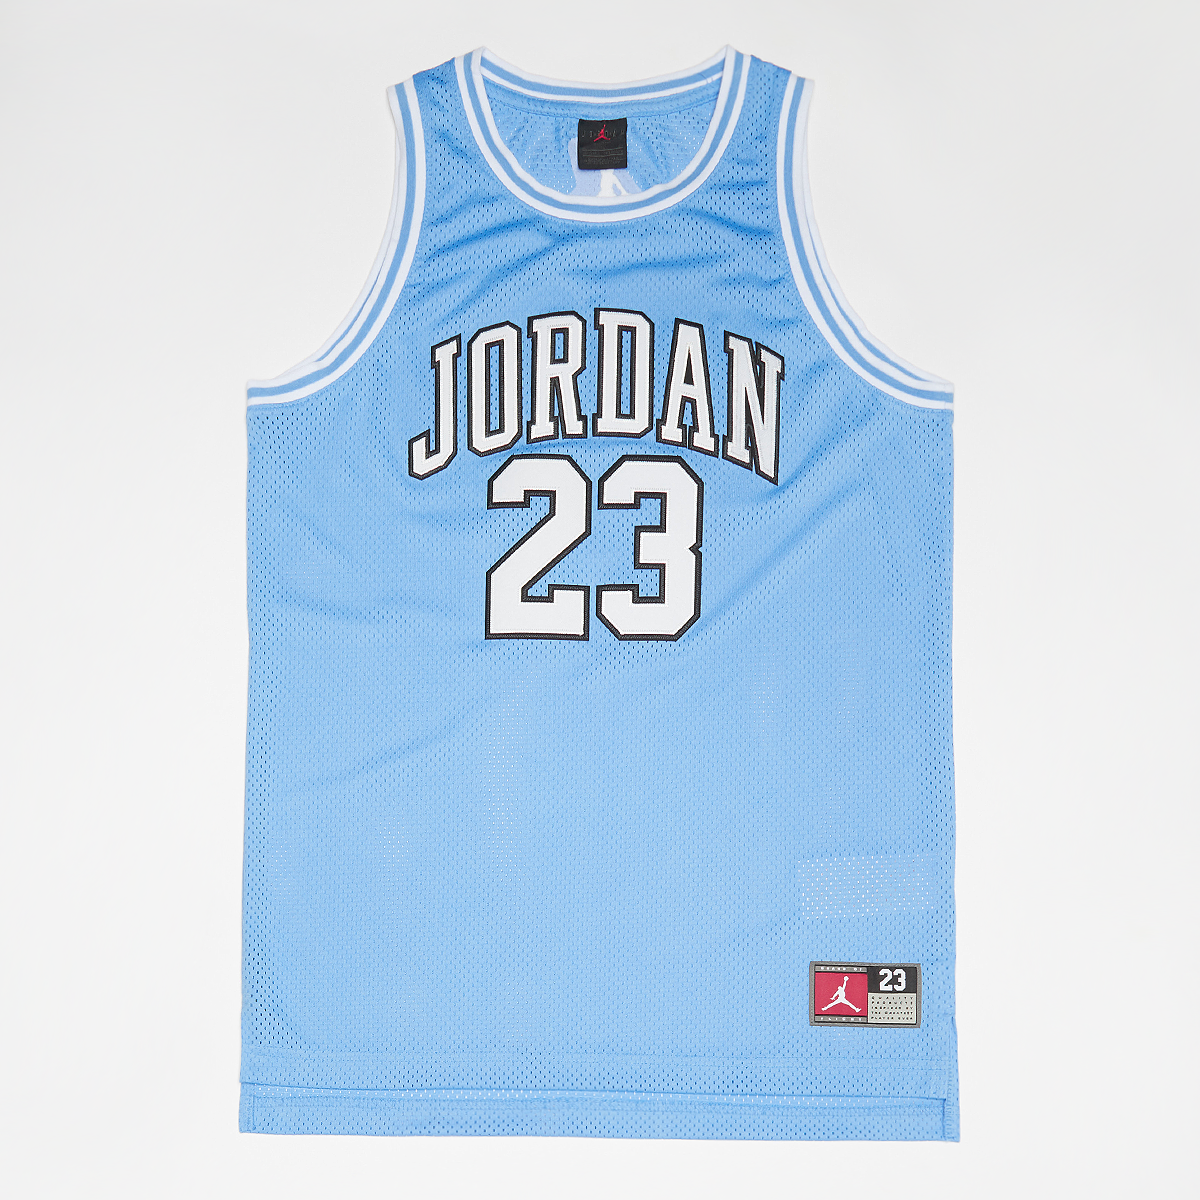 Jordan Junior 23 Jersey Sportshirts Kids university blue maat: 128 beschikbare maaten:128 147 158 170